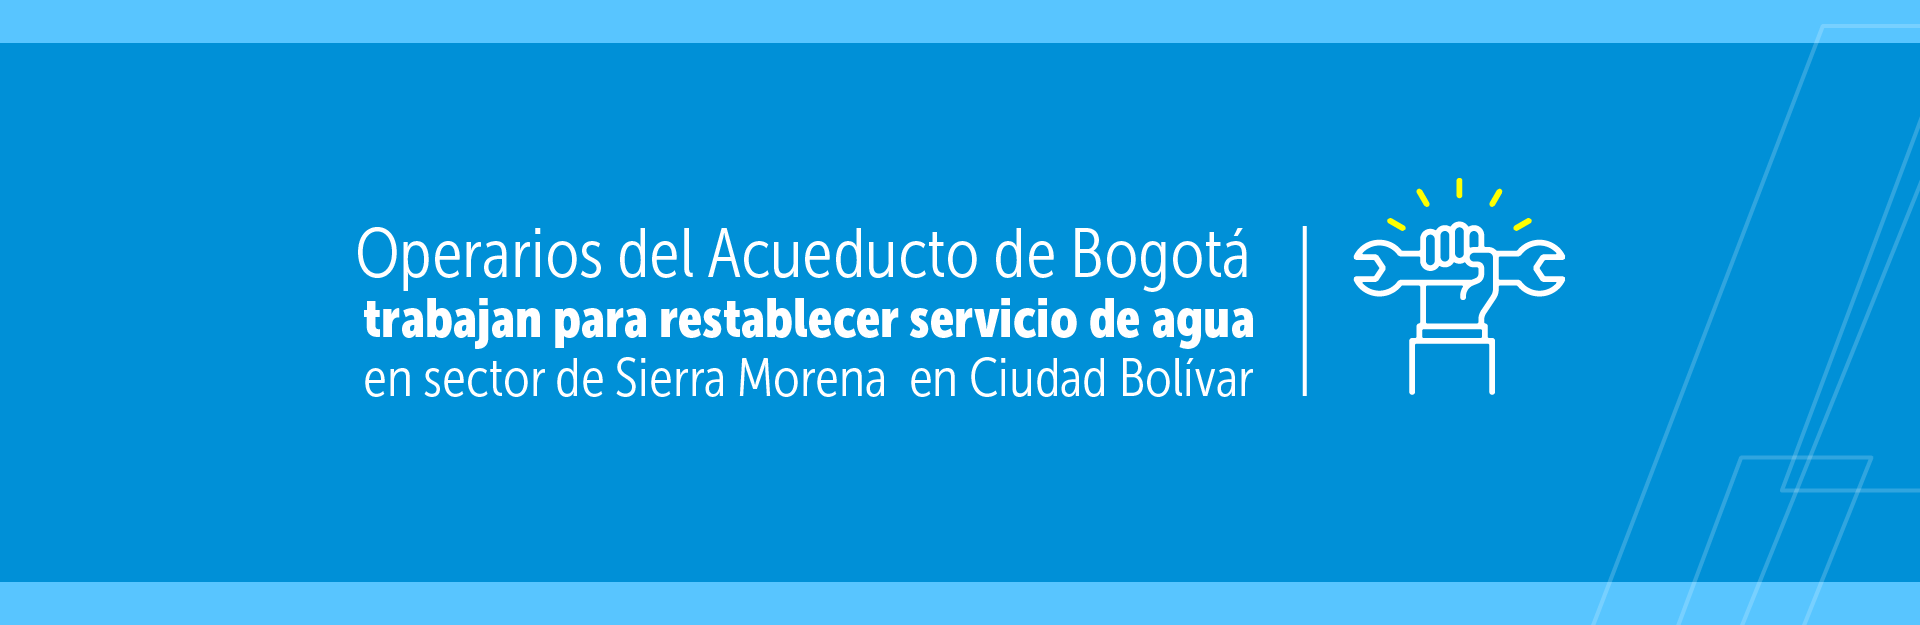 Operarios del Acueducto de Bogotá trabajan para restablecer servicio de agua en sector de Sierra Morena  en Ciudad Bolívar